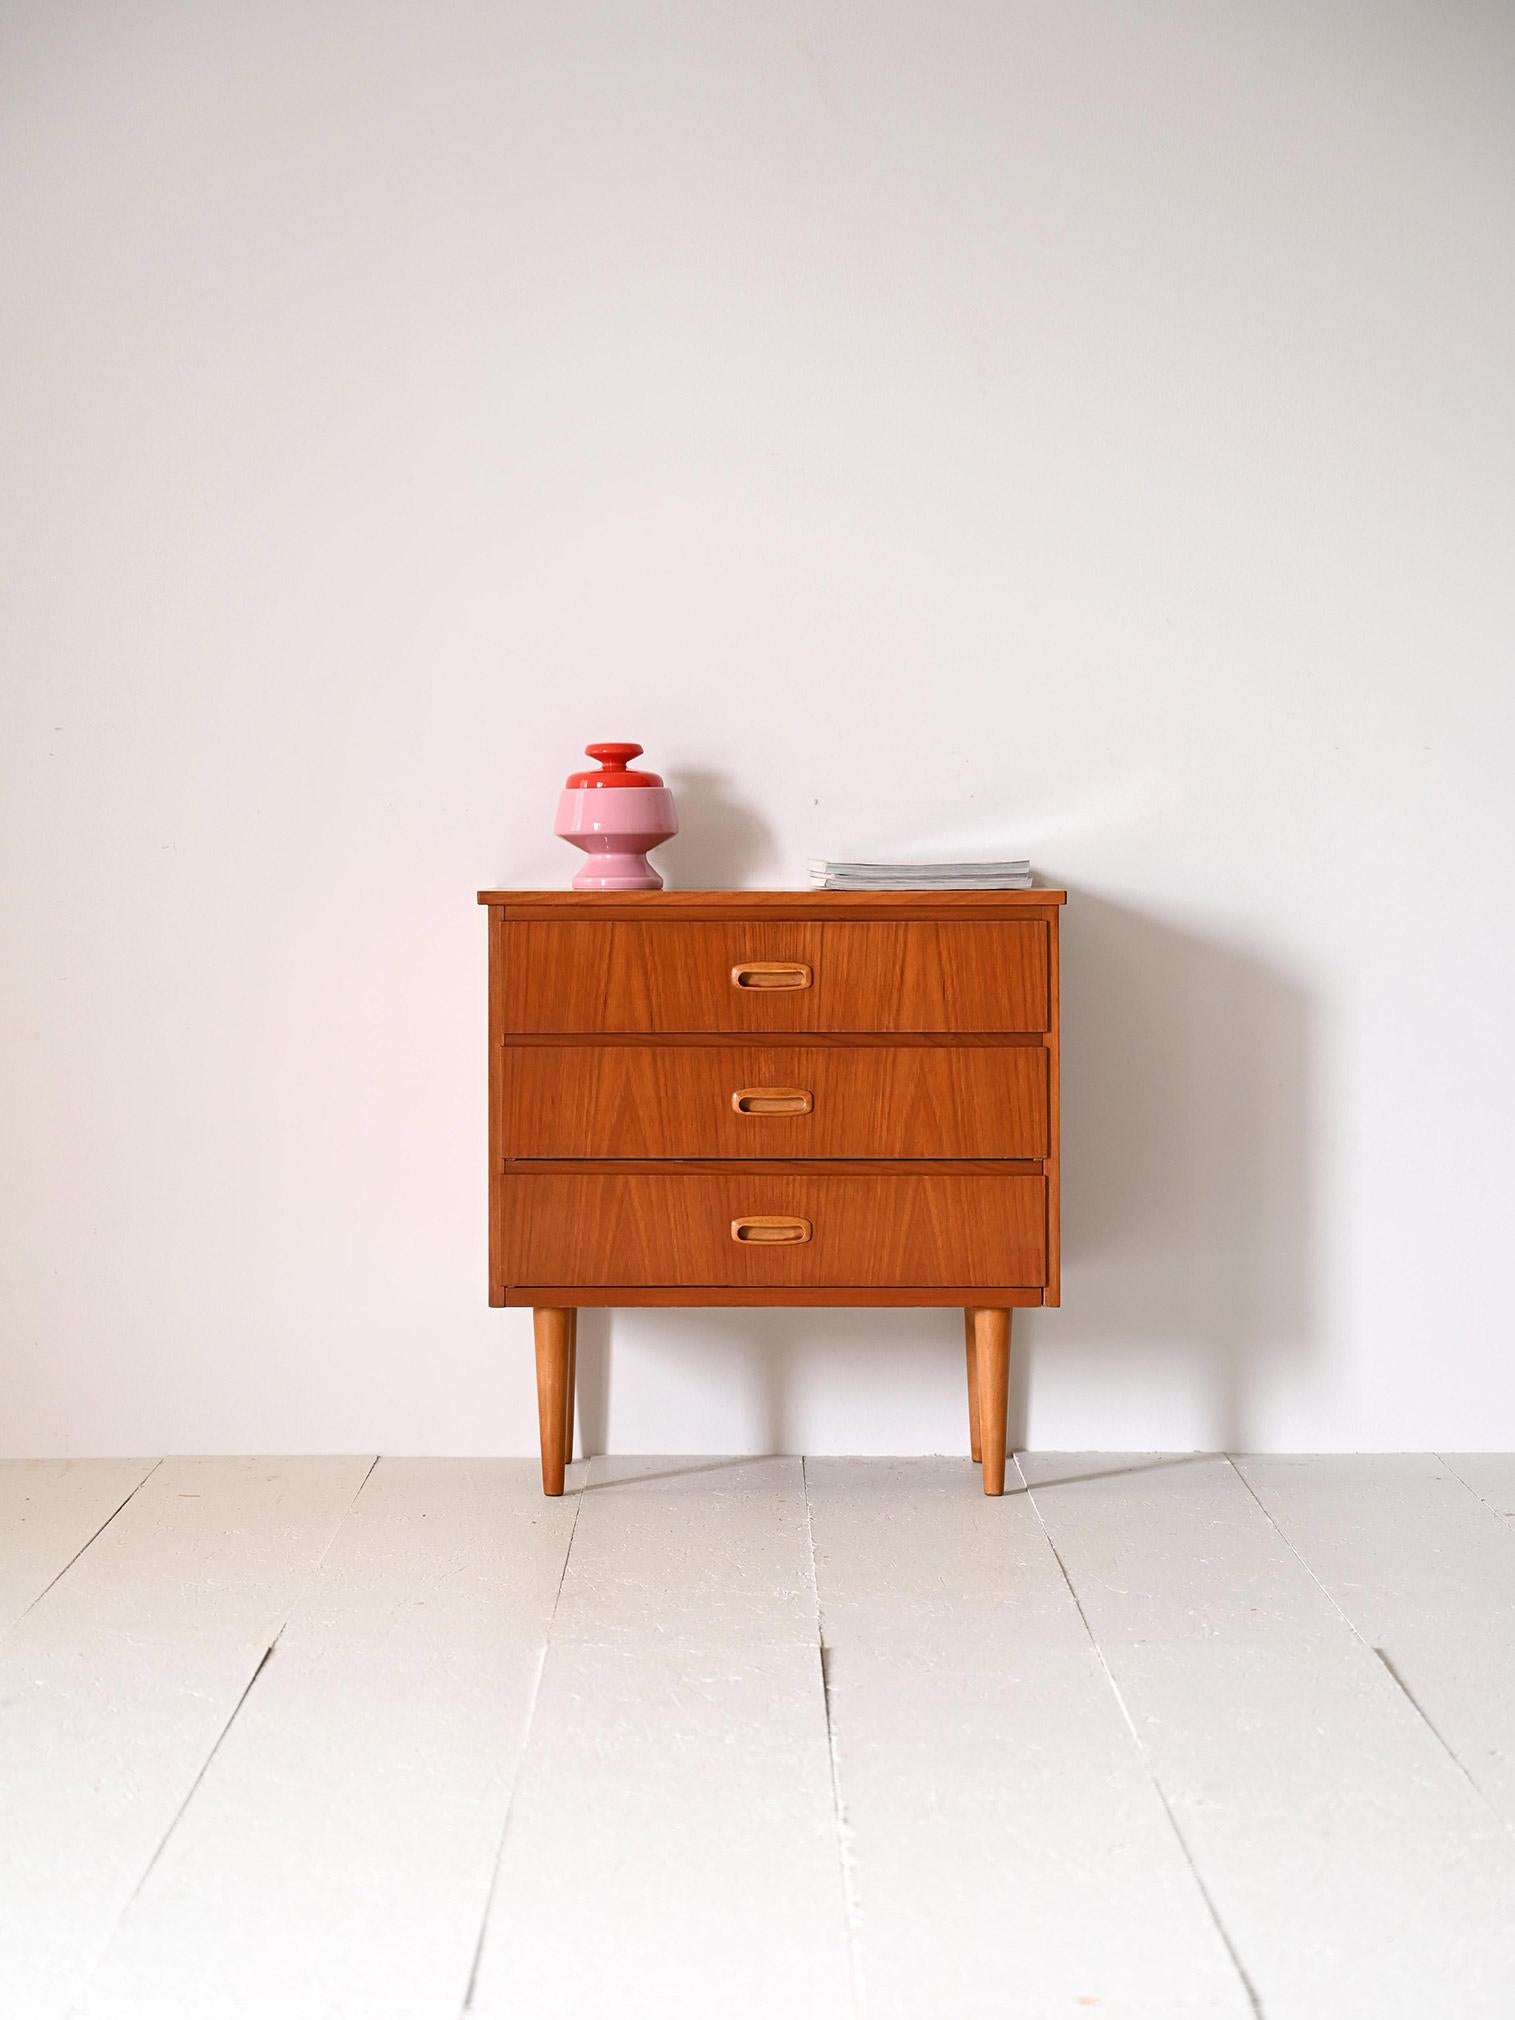 Meuble vintage scandinave à trois tiroirs.

Ce meuble antique moderne se caractérise par des lignes essentielles et des détails soignés, typiques du design nordique. Il se compose d'un cadre en teck et de 3 tiroirs avec des poignées en bois sculpté.